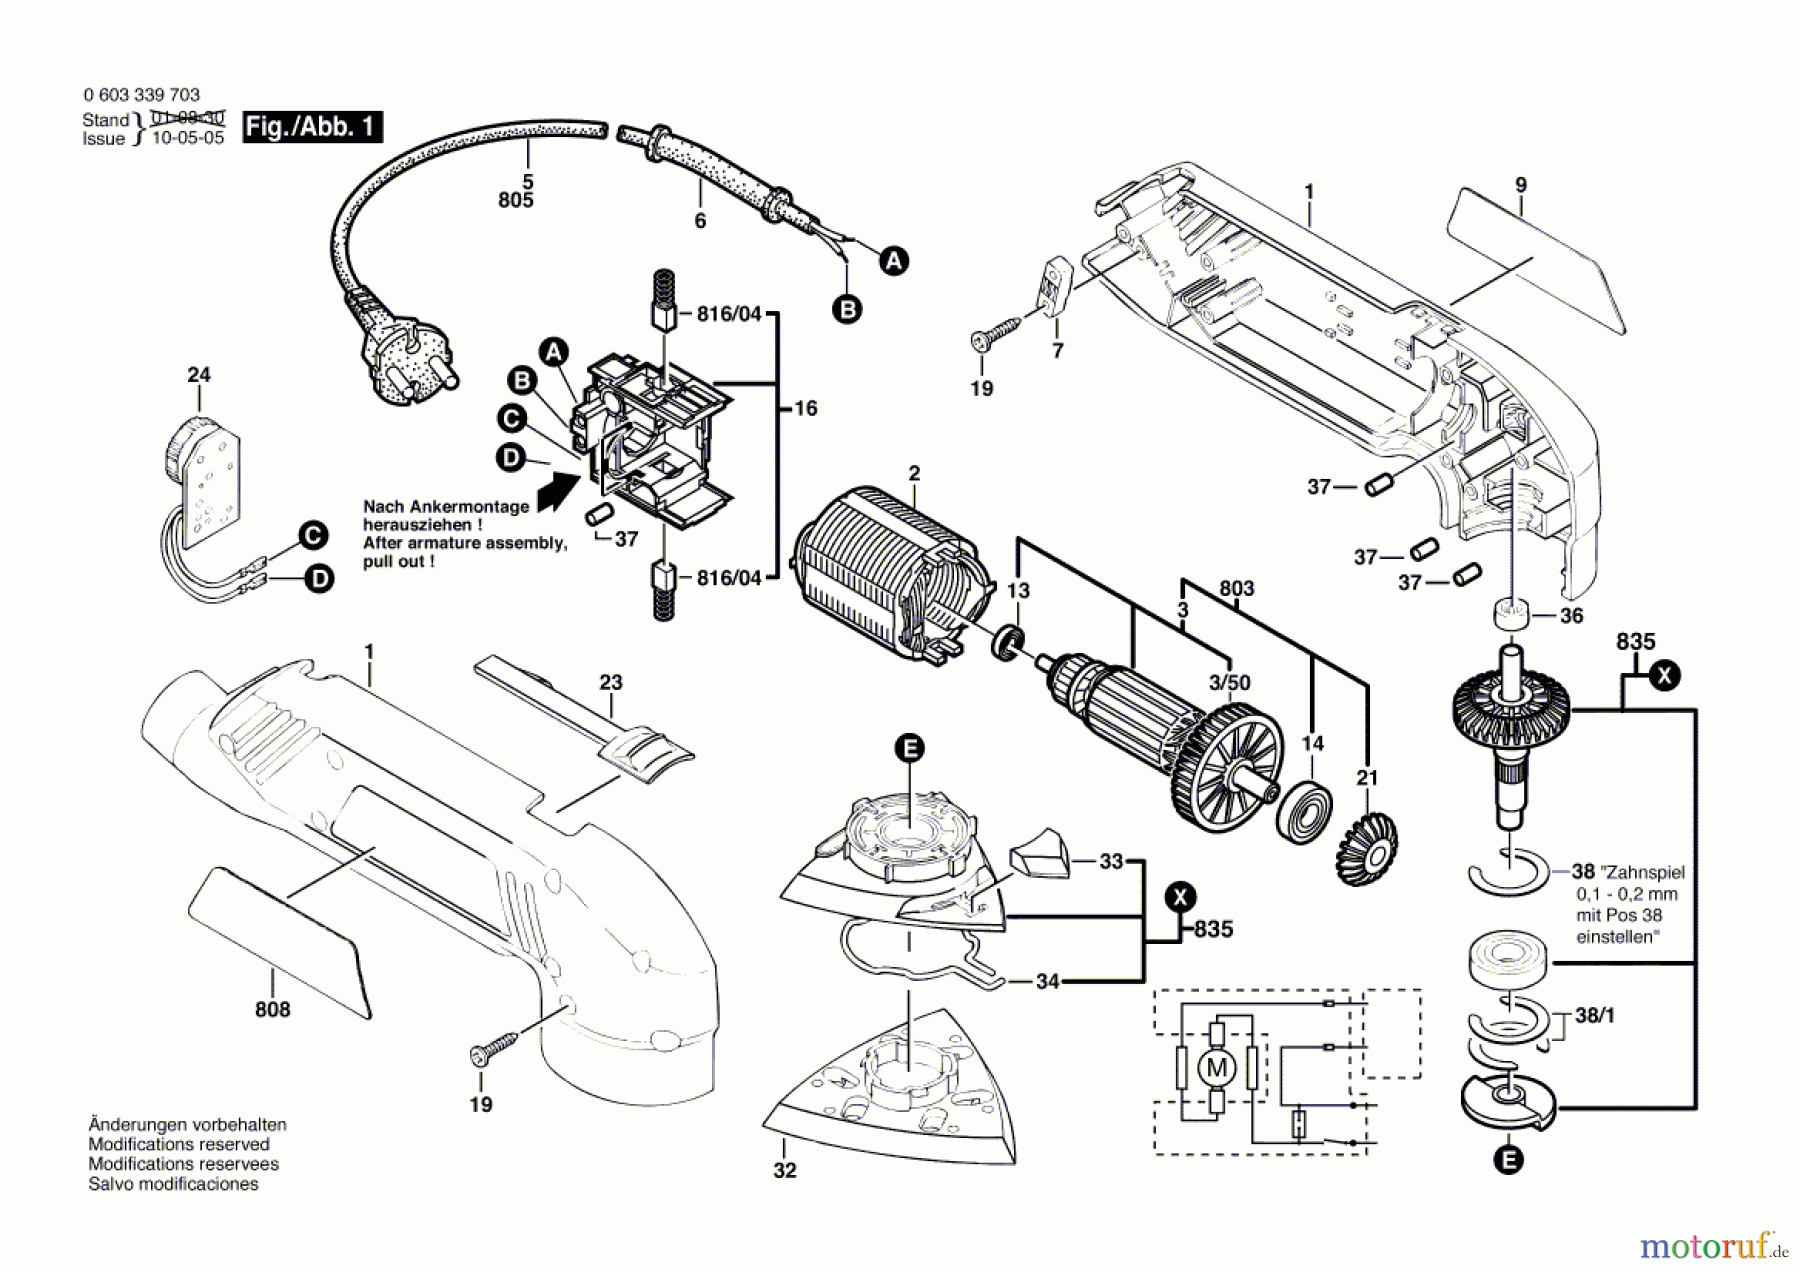  Bosch Werkzeug Deltaschleifer PDA 180 E Seite 1